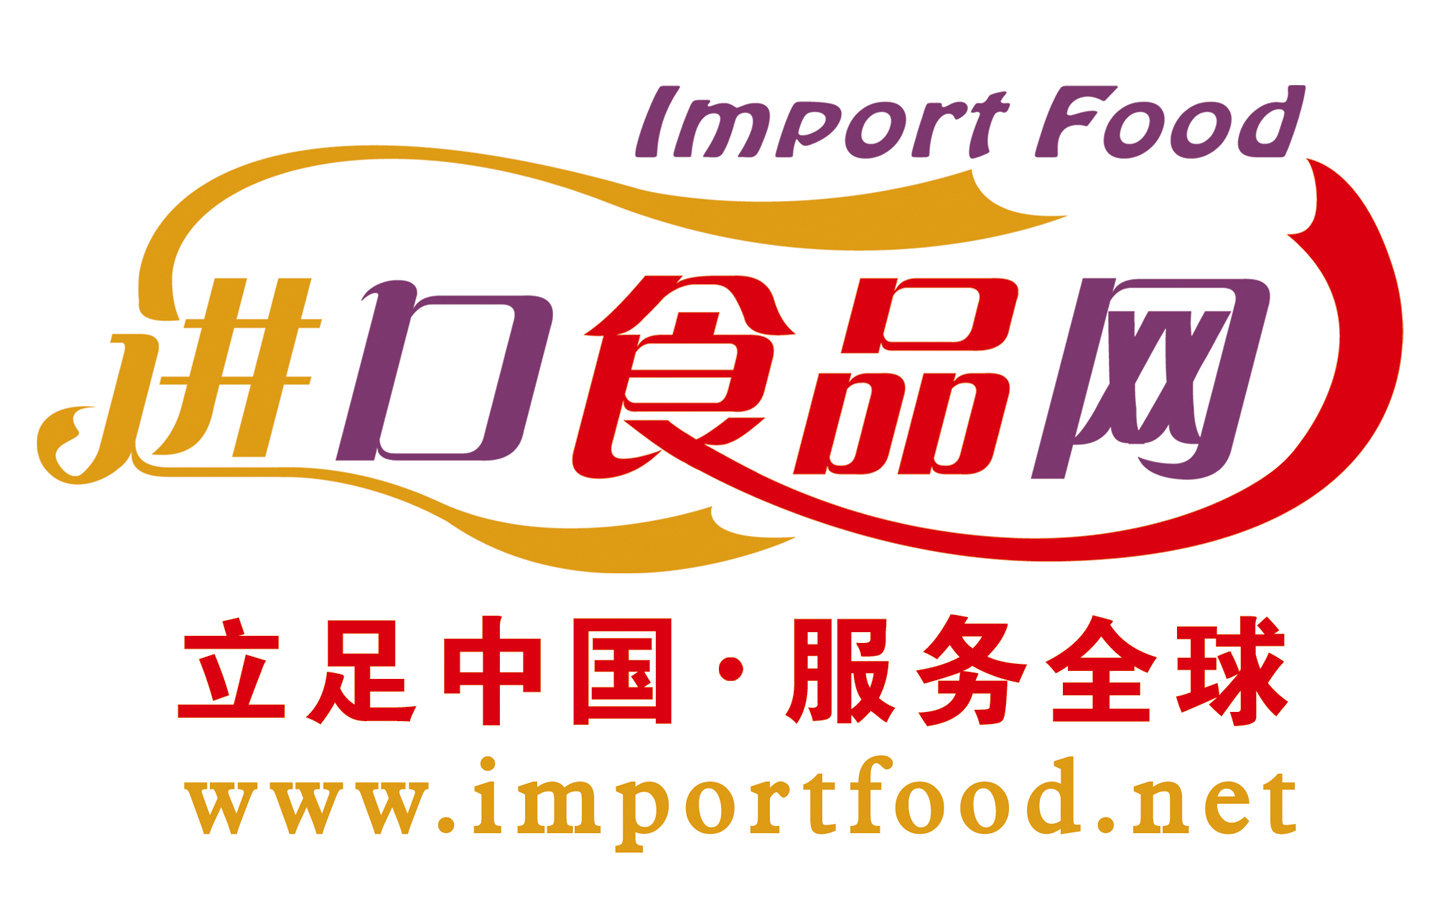 www.importfood.net